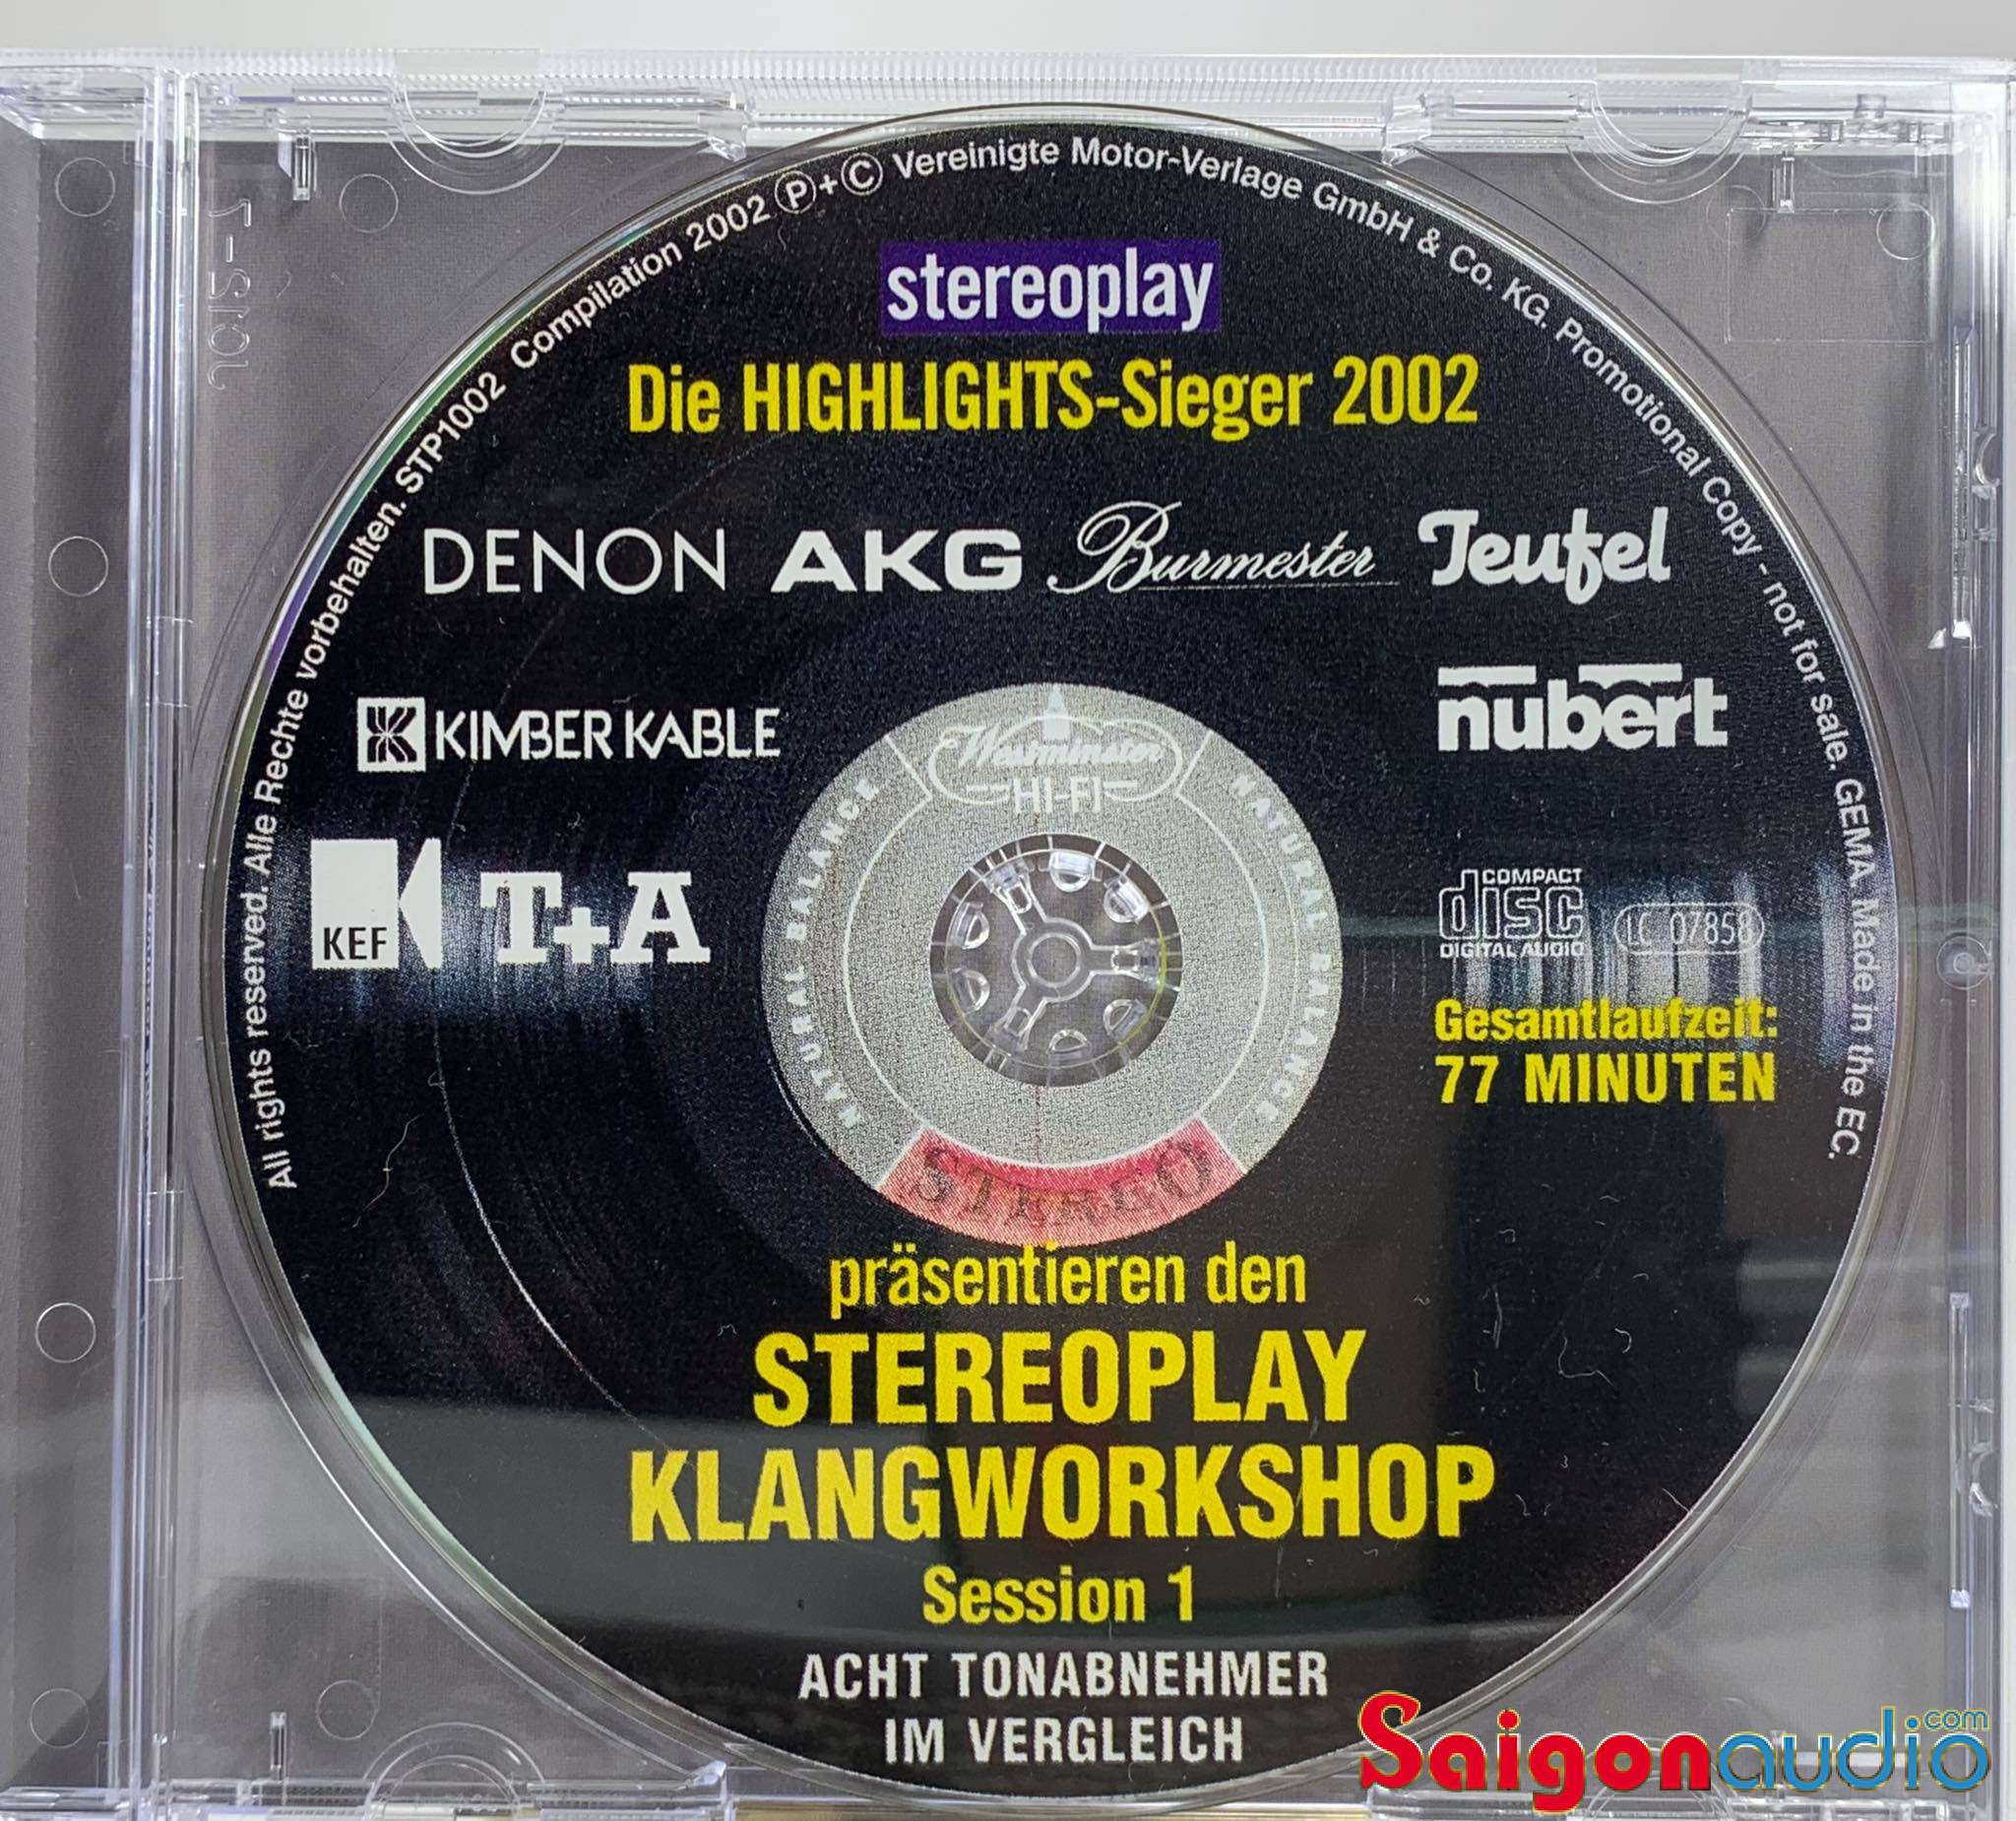 Đĩa CD gốc nhạc cổ điển - test dàn Stereoplay Klangworkshop Session I (Free ship khi mua 2 đĩa CD cùng hoặc khác loại)